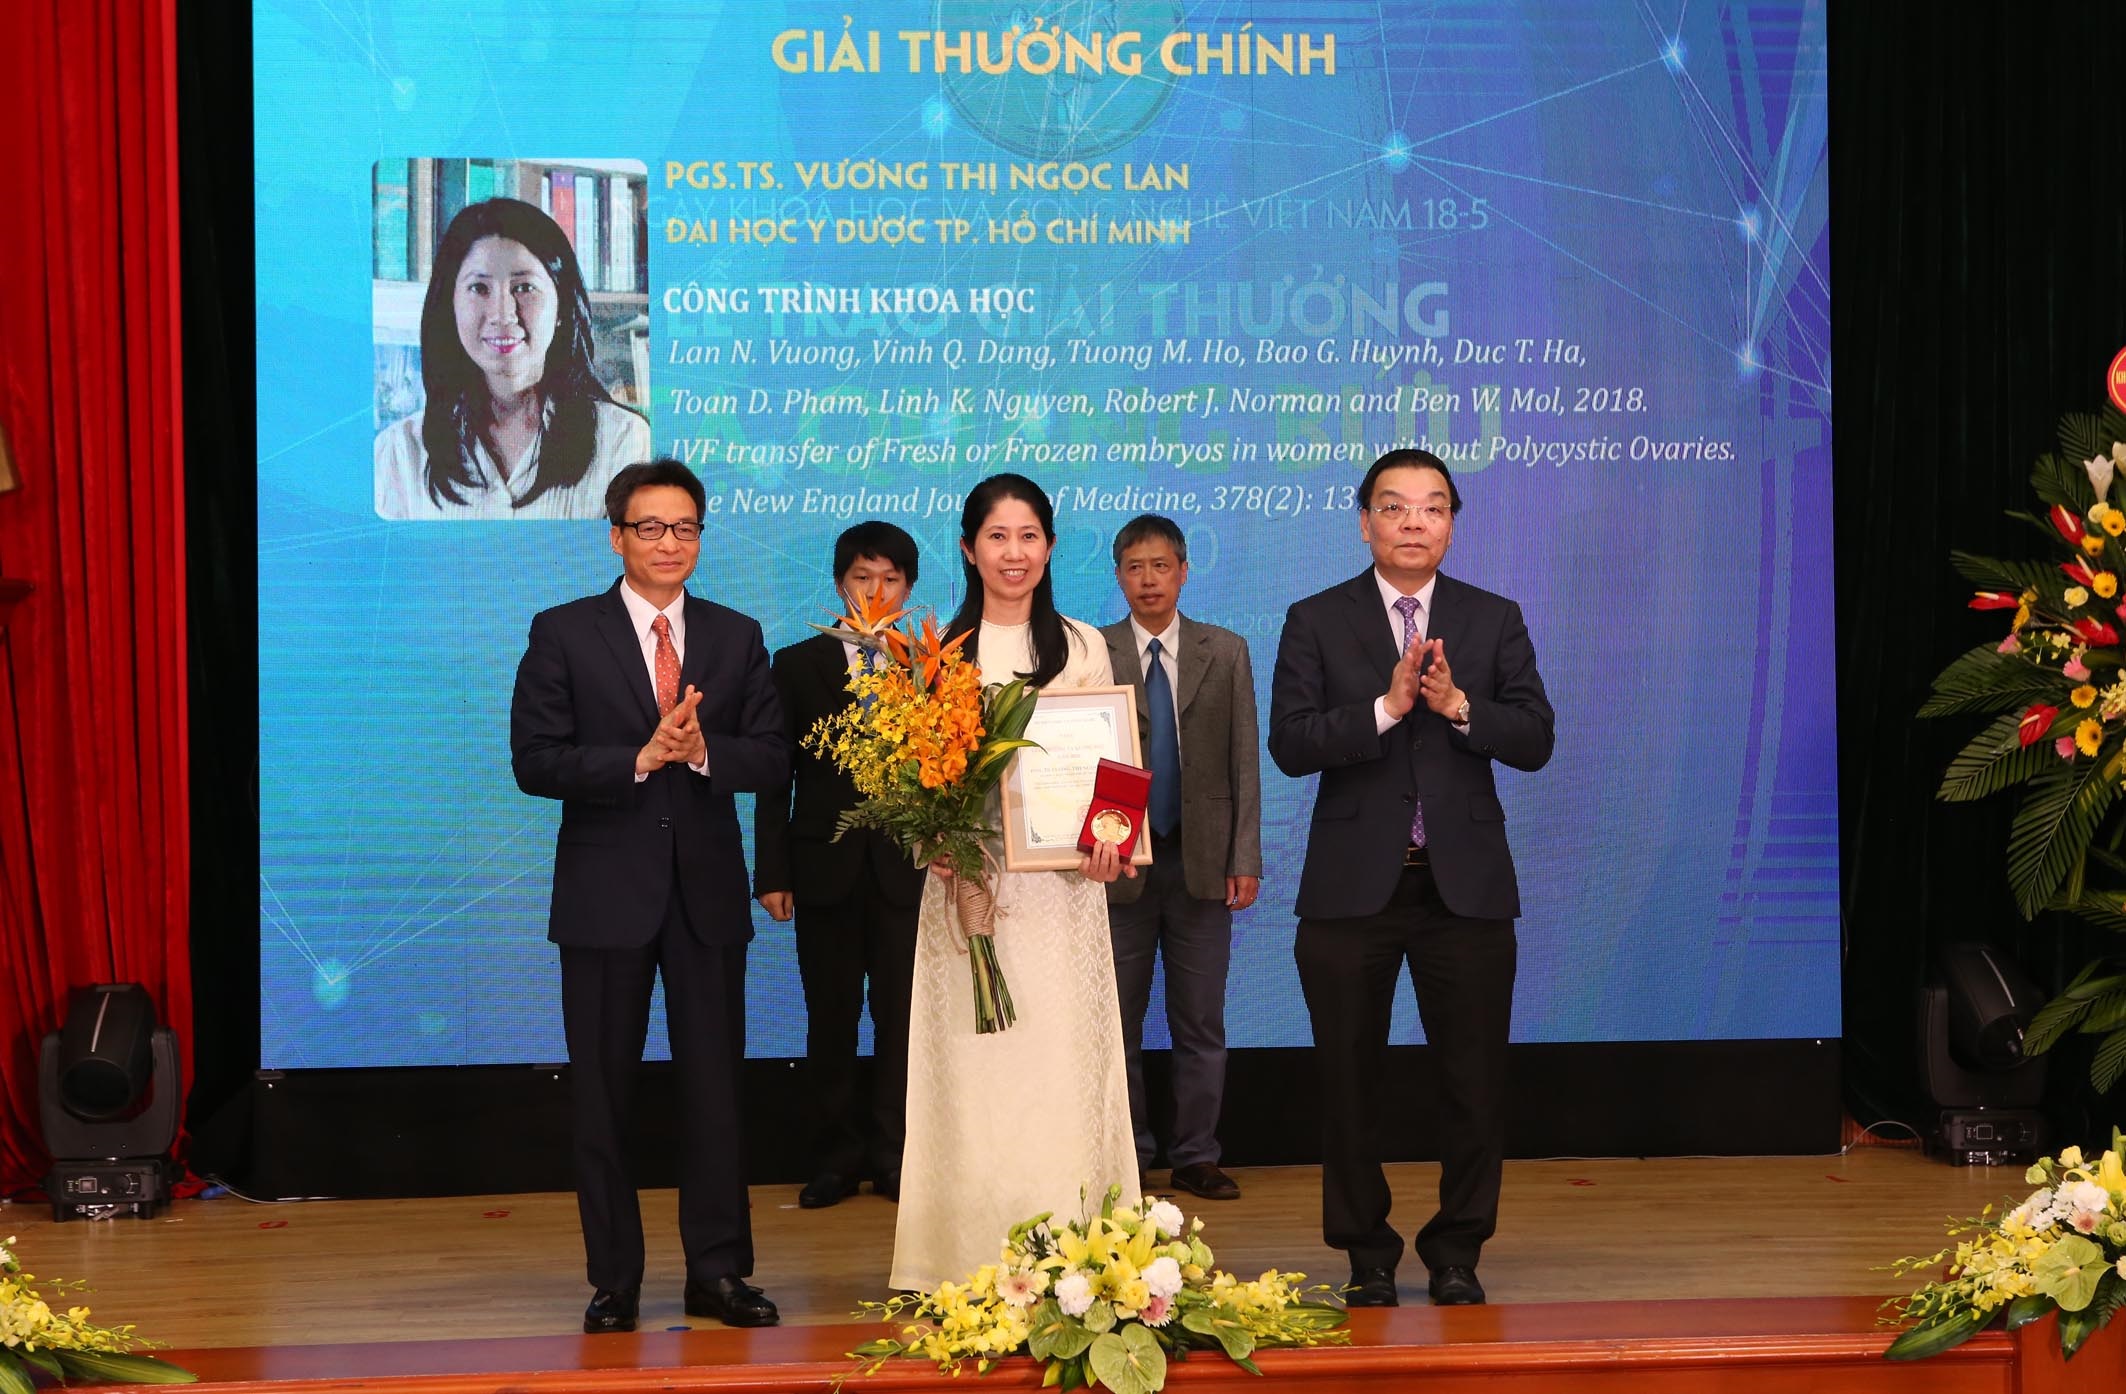 Phó Thủ tướng Vũ Đức Đam và Bộ trưởng Chu Ngọc Anh trao giải thưởng Tạ Quang Bửu cho các nhà khoa học. Ảnh: Trung tâm truyền thông/ Bộ KH&CN